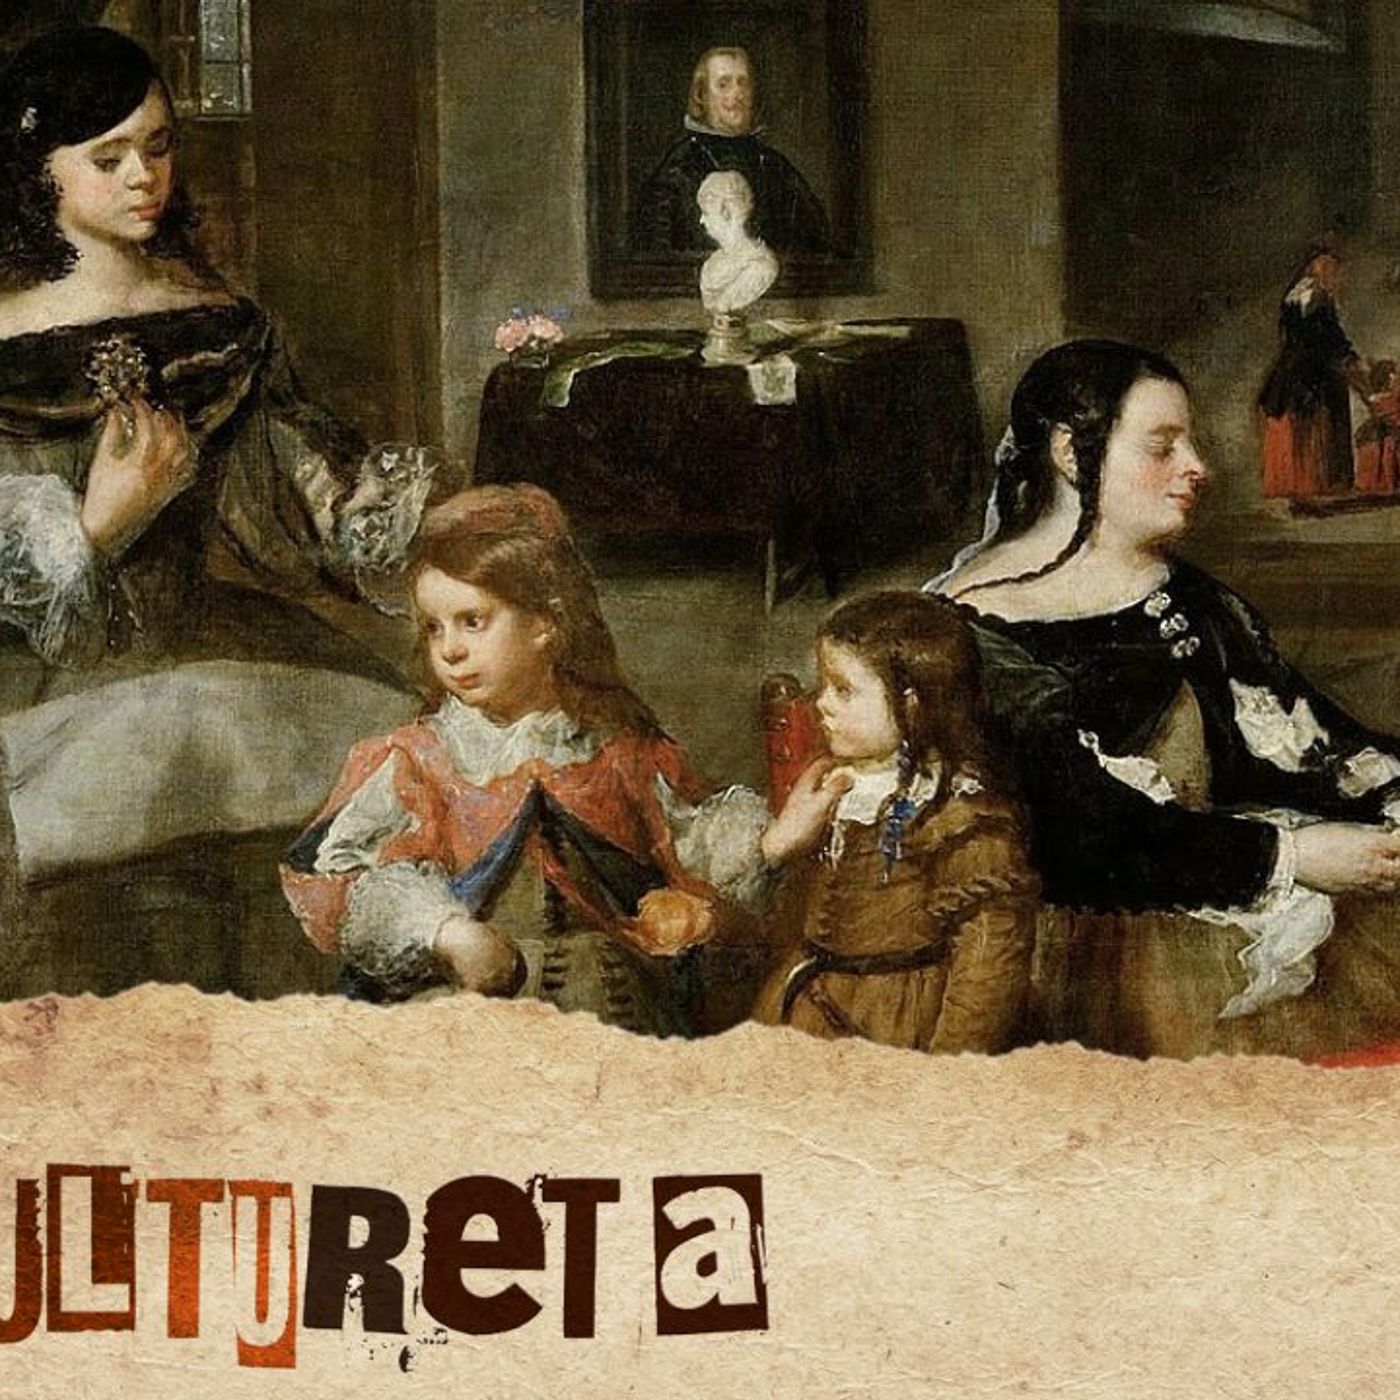 La Cultureta 10x31: Ni los niños de Velázquez son tan serios ni los de Goya se lo pasan tan bien